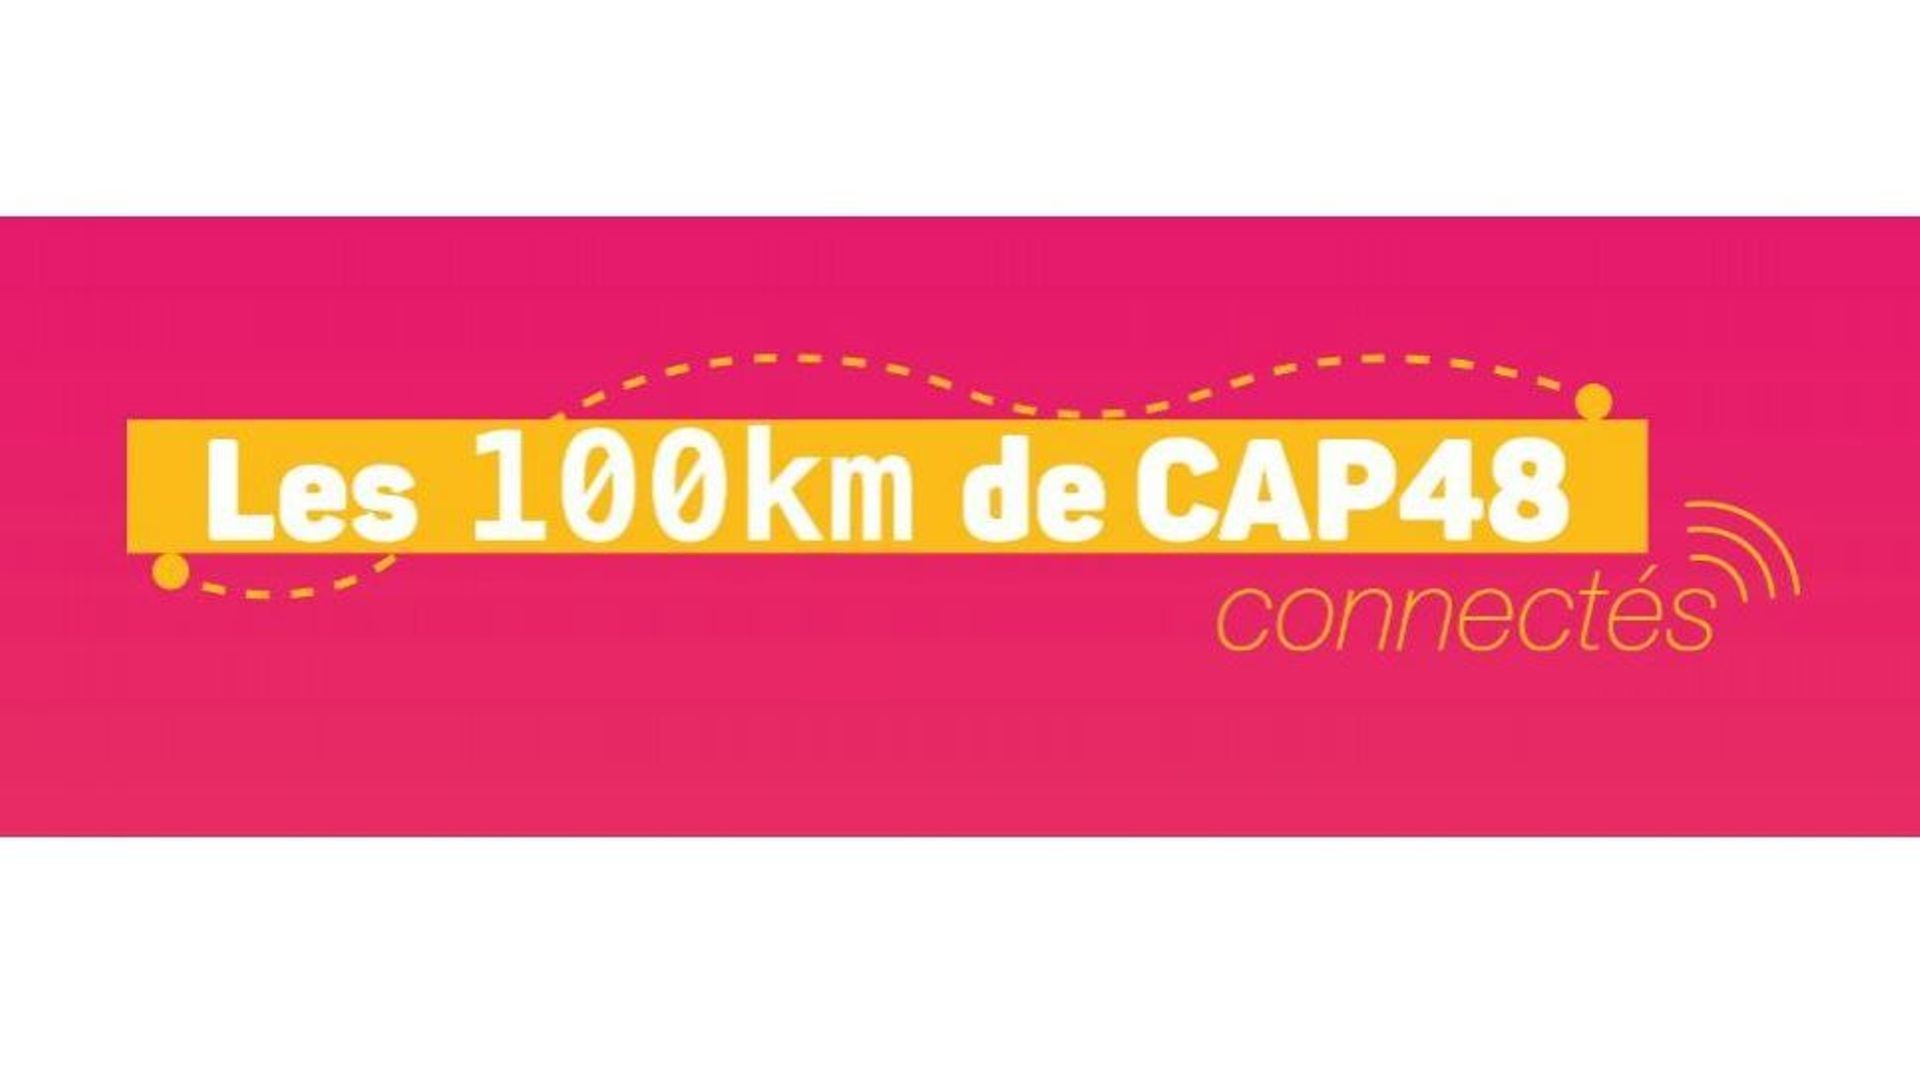 Daniela Prépeliuc, nouvelle ambassadrice des 100 km de CAP 48